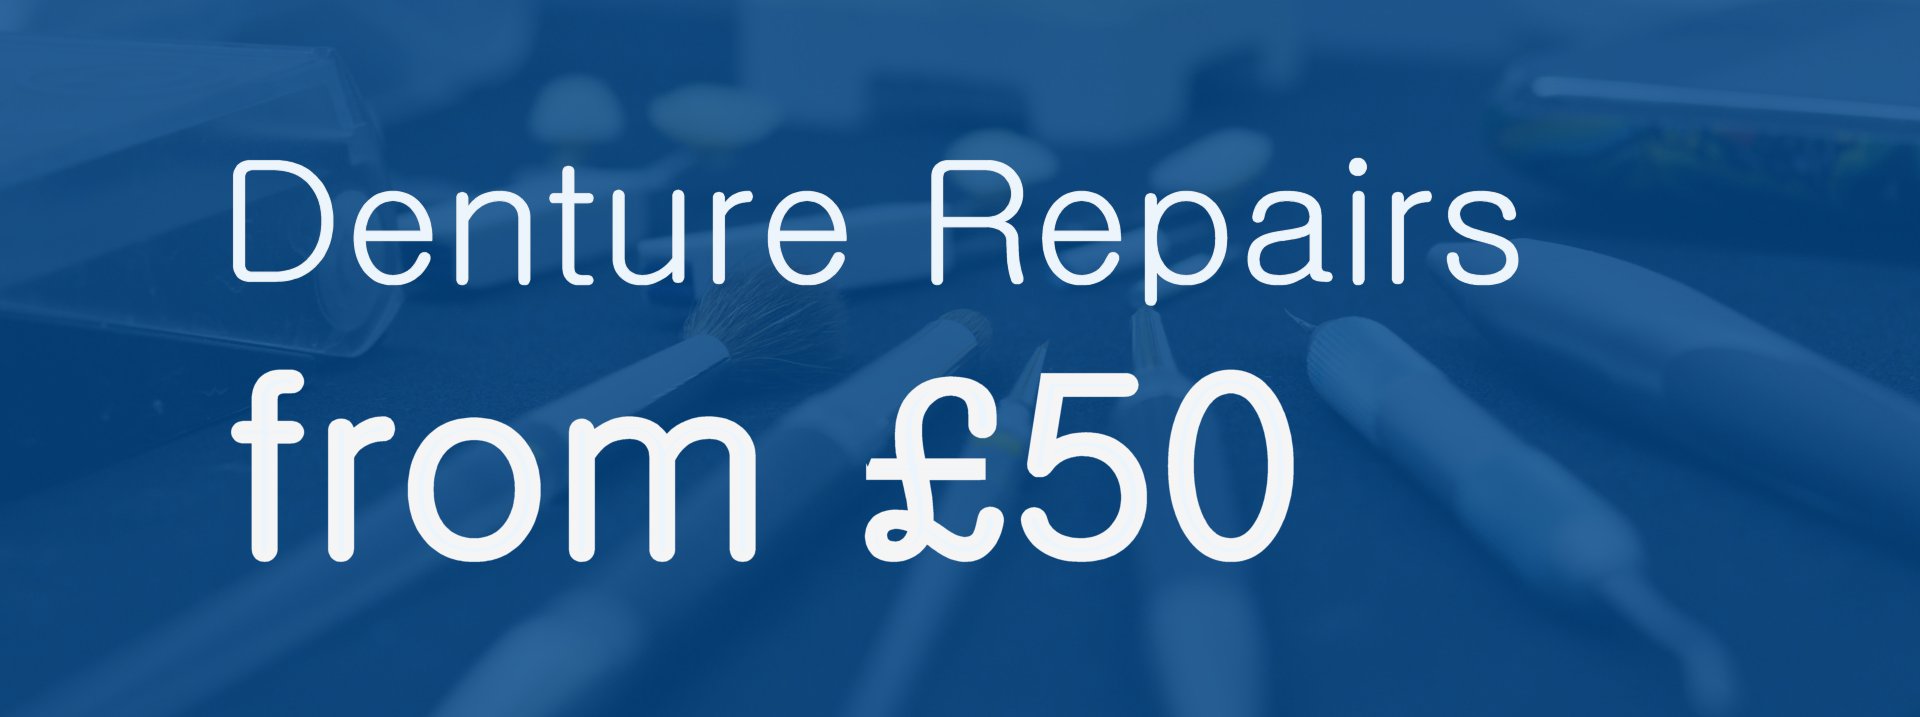 Dentures Repair from £50